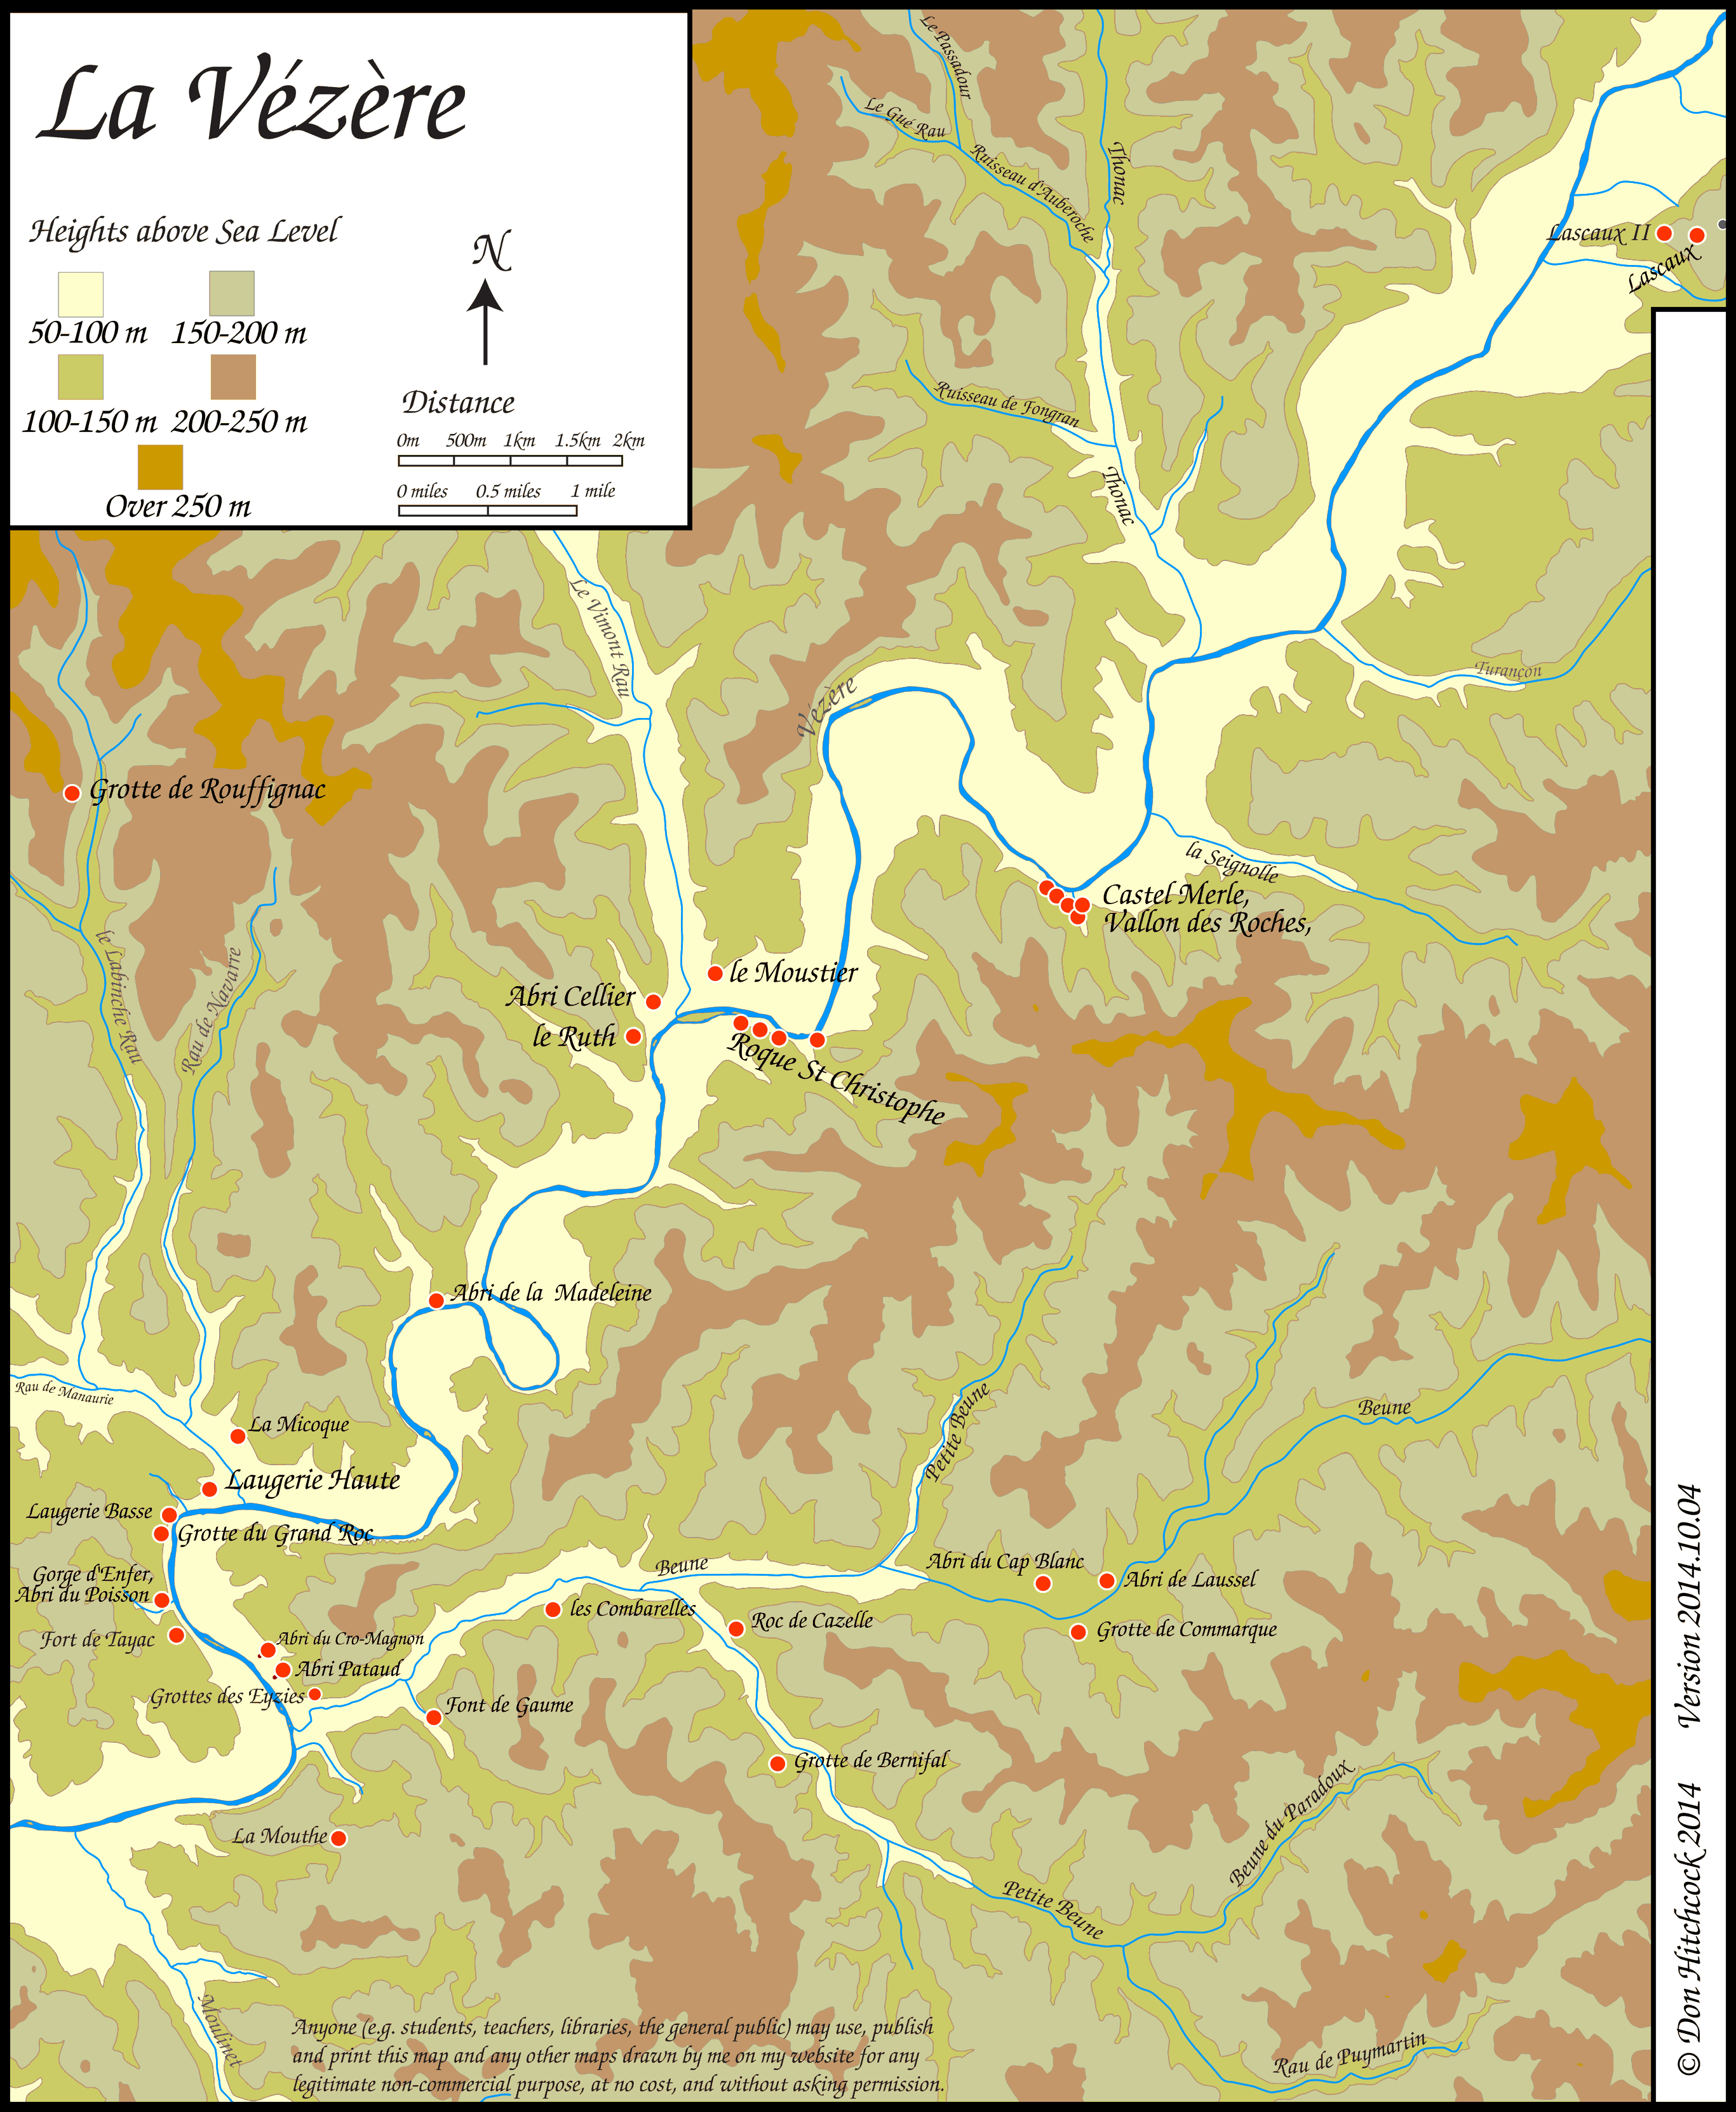 Map of the Vezere